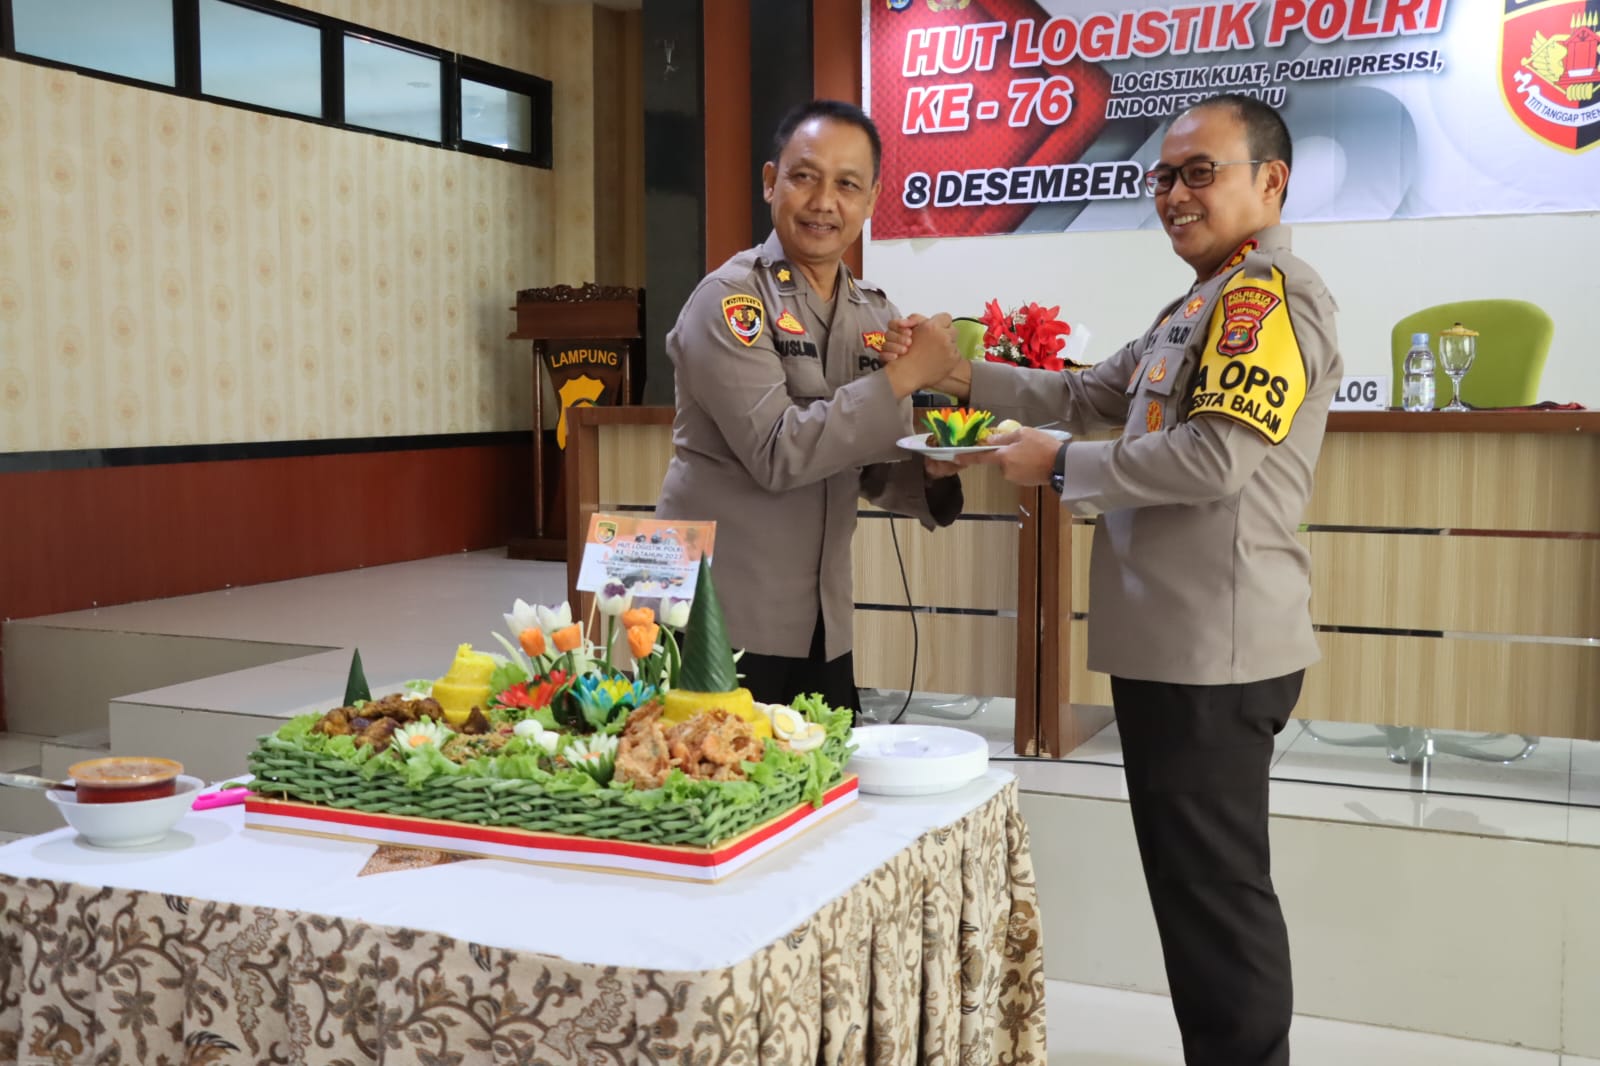 Dalam Acara HUT Logistik Polri Ke-76, Polresta Bandar Lampung Gelar Syukuran